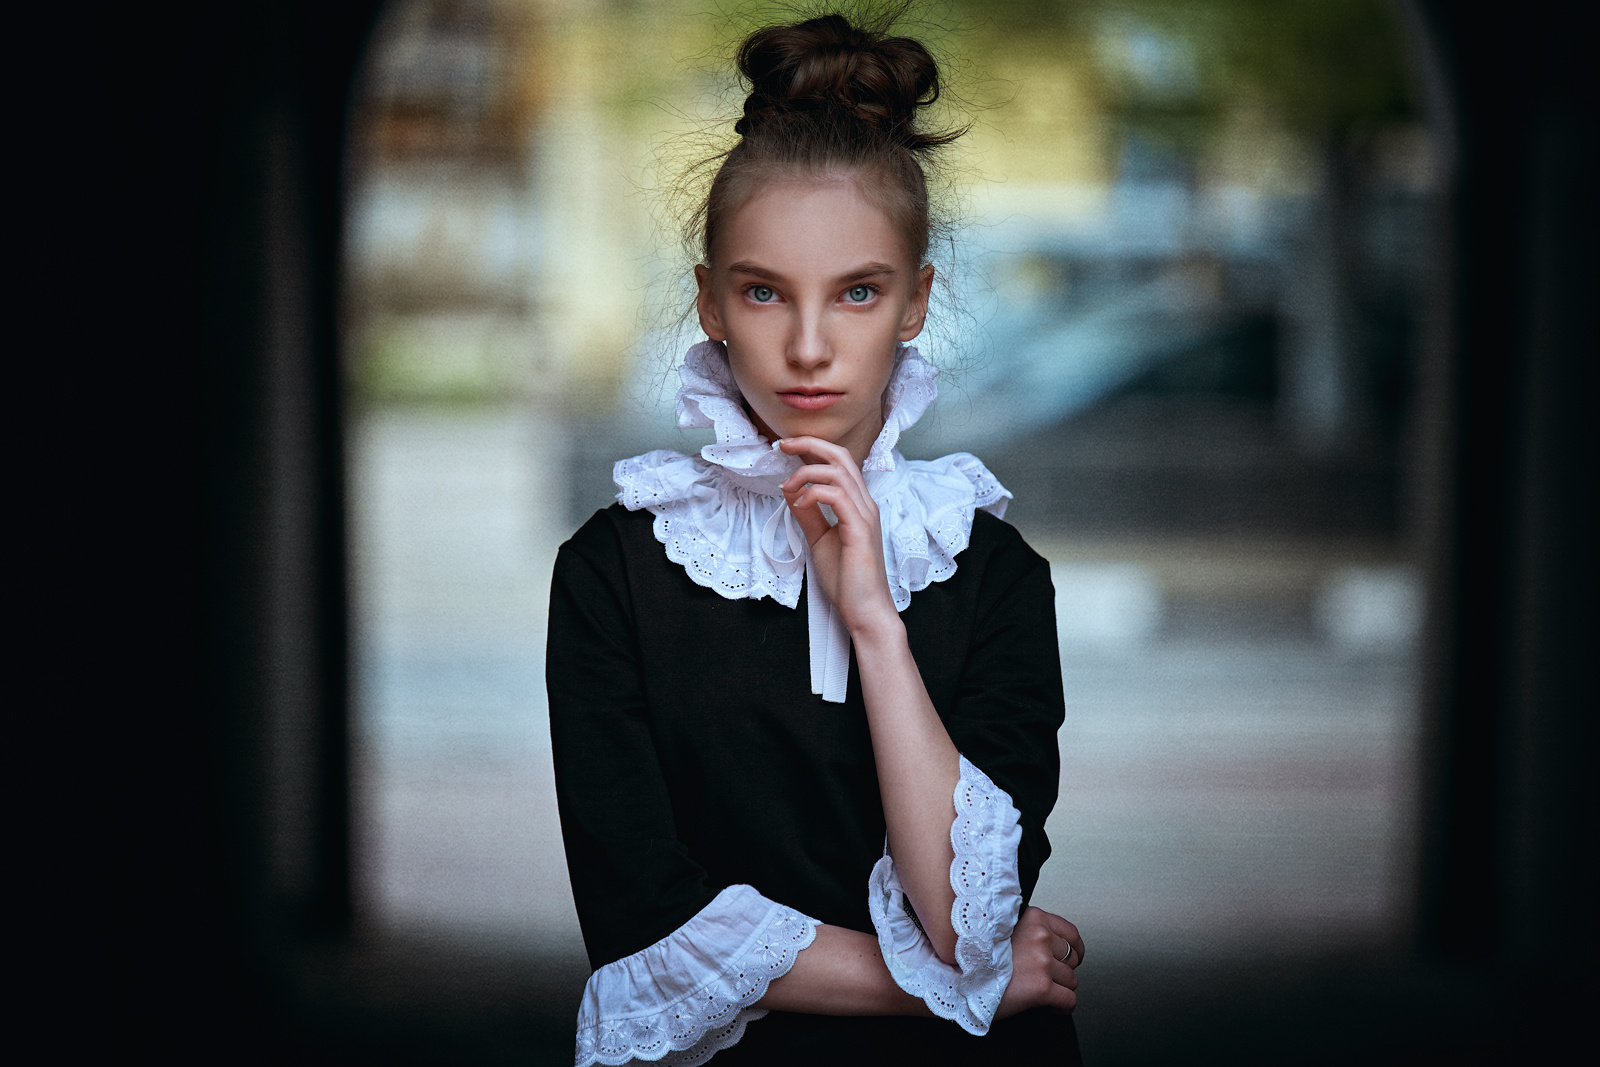 Юная Татьяна портрет девушка улица взгляд стиль красота фото